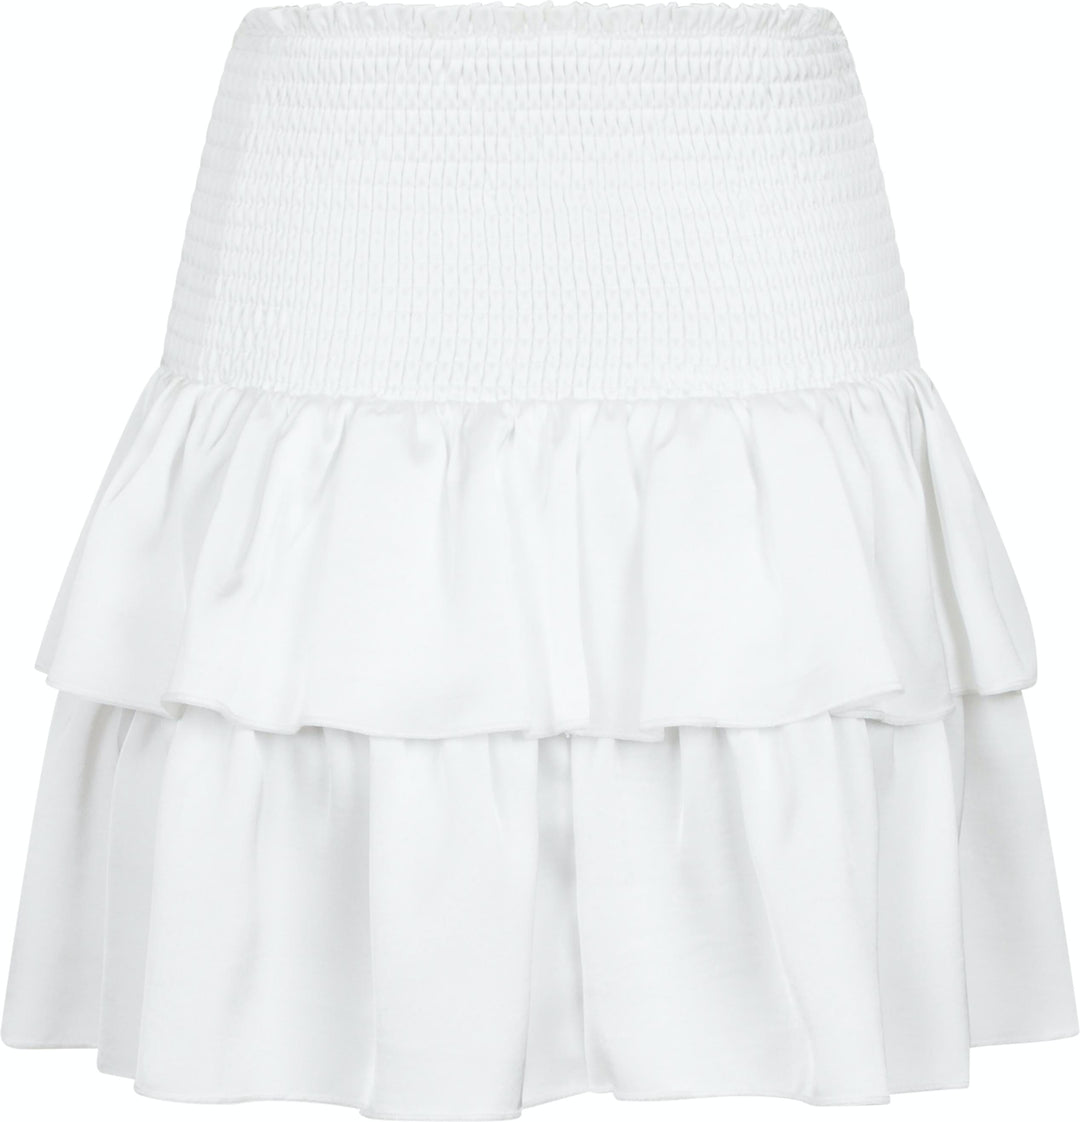 Neo Noir - Carin Heavy Sateen Skirt - White